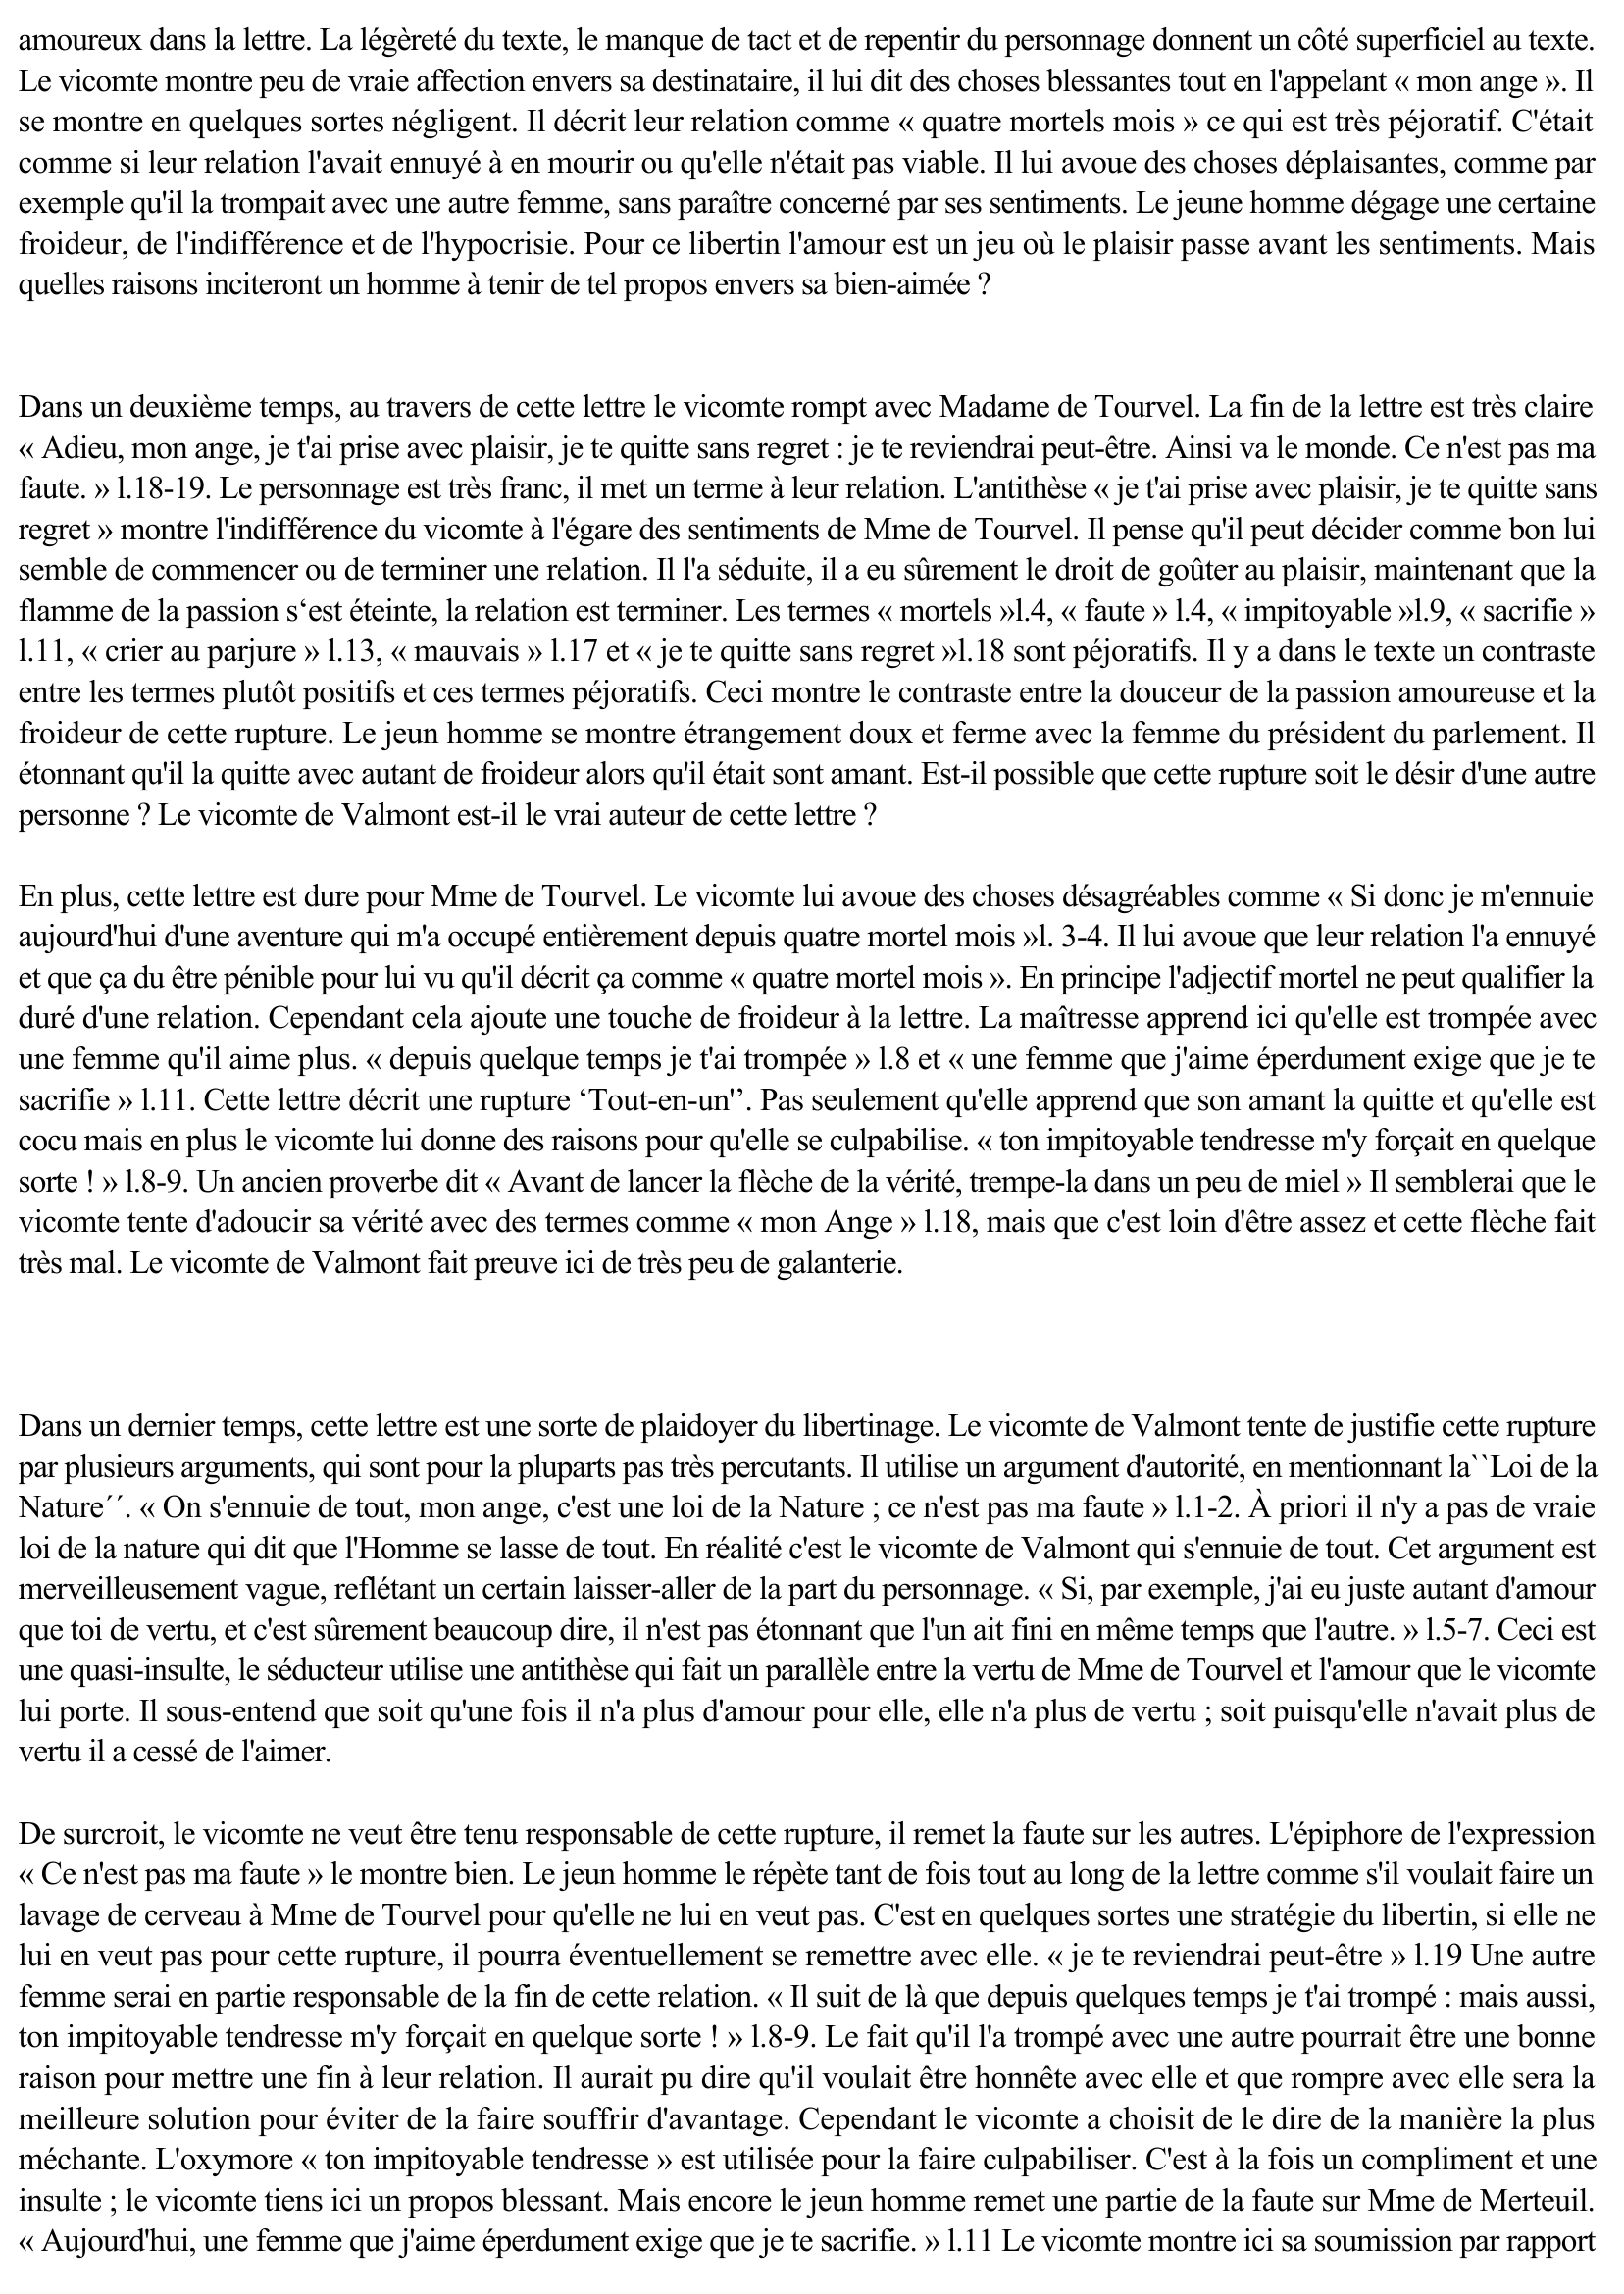 Prévisualisation du document Pierre Choderlos de Laclos Les Liaisons dangereuses - Lettre CXLI (141) - La Marquise de Merteuil au Vicomte de Valmont